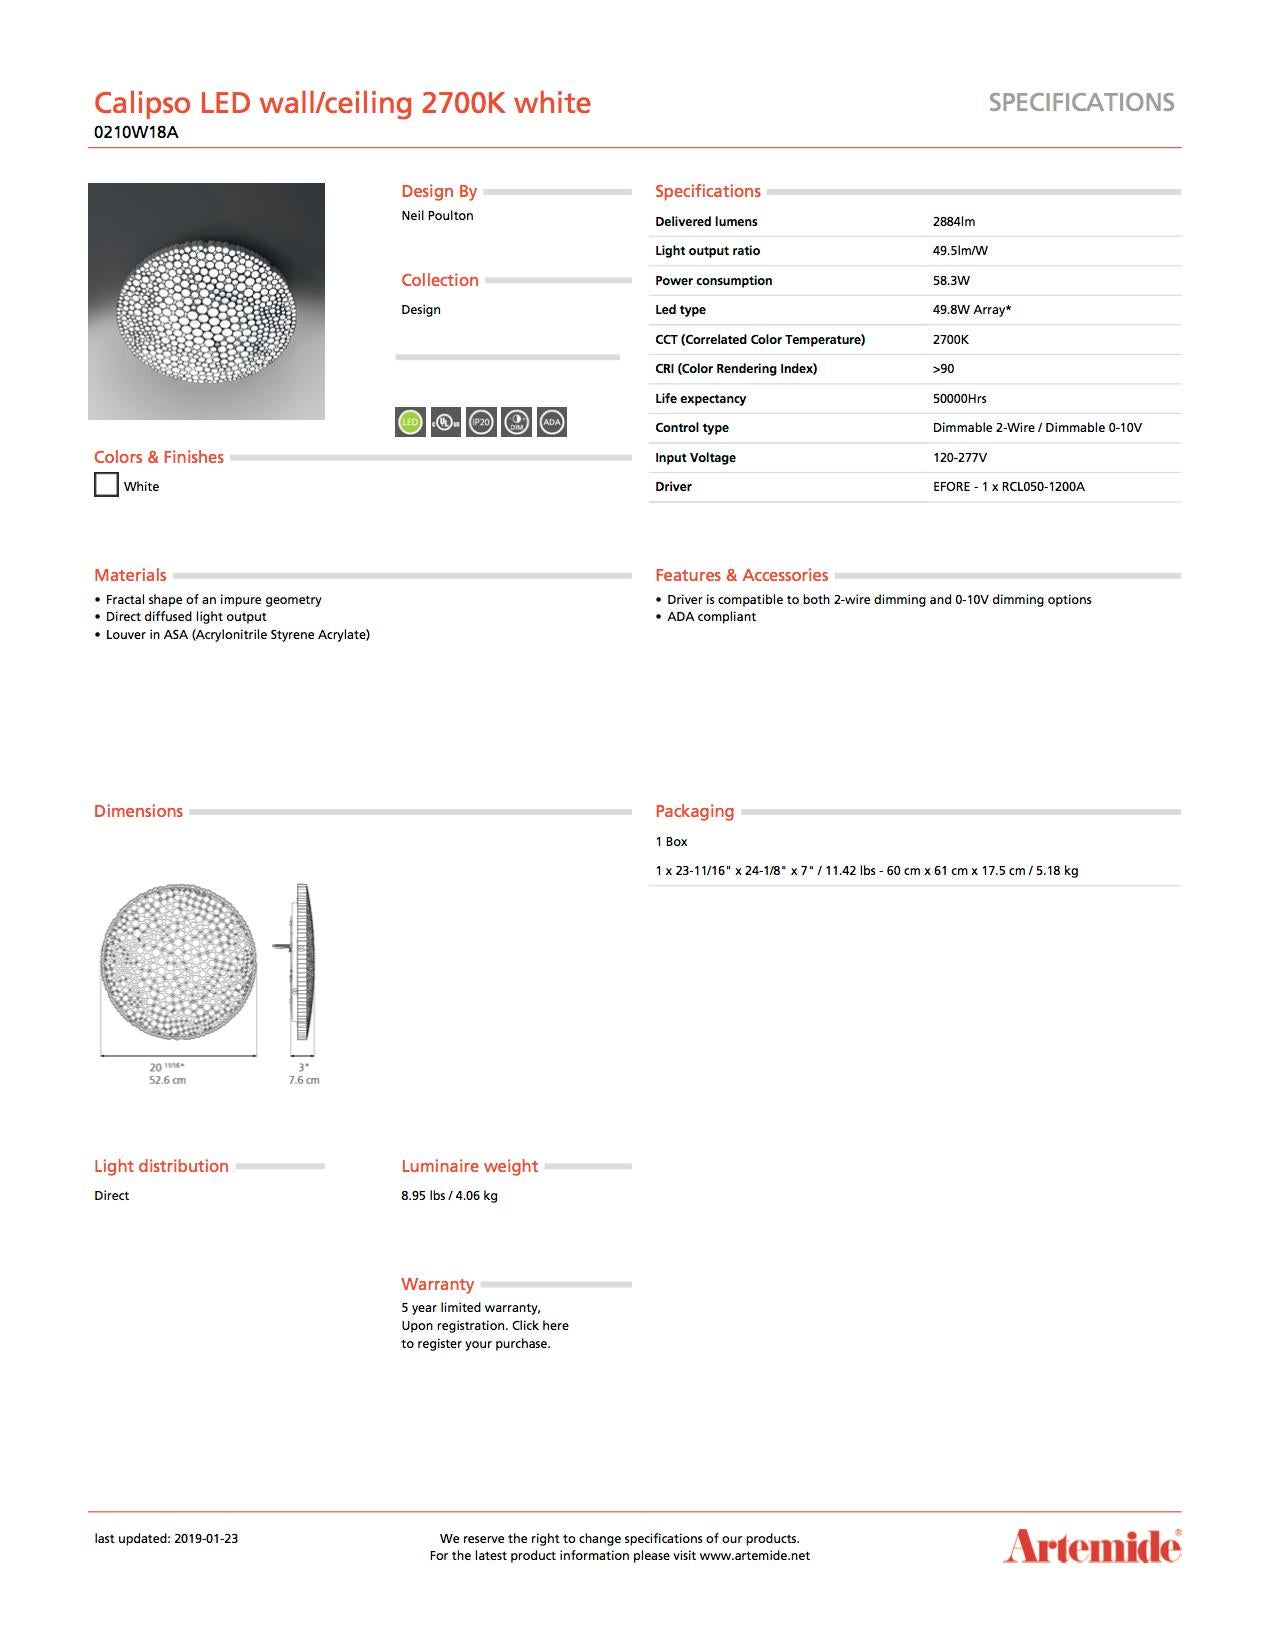 Artemide Calipso 2700K LED-Wand- und Deckenleuchte in Weiß (21. Jahrhundert und zeitgenössisch) im Angebot